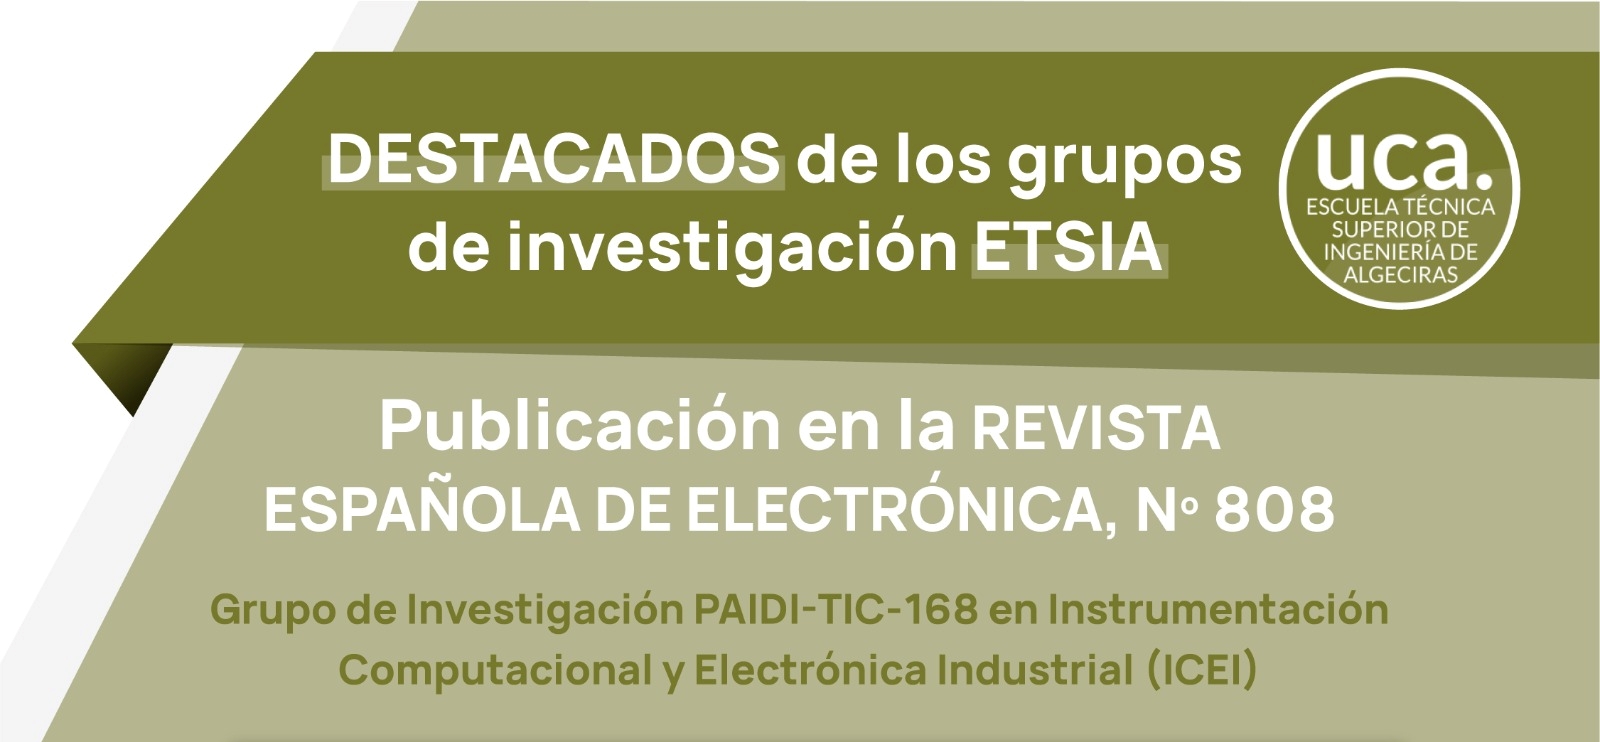 Publicación en la Revista Española de Electrónica de un artículo que emana de un TFG desarrollado en nuestra Escuela.